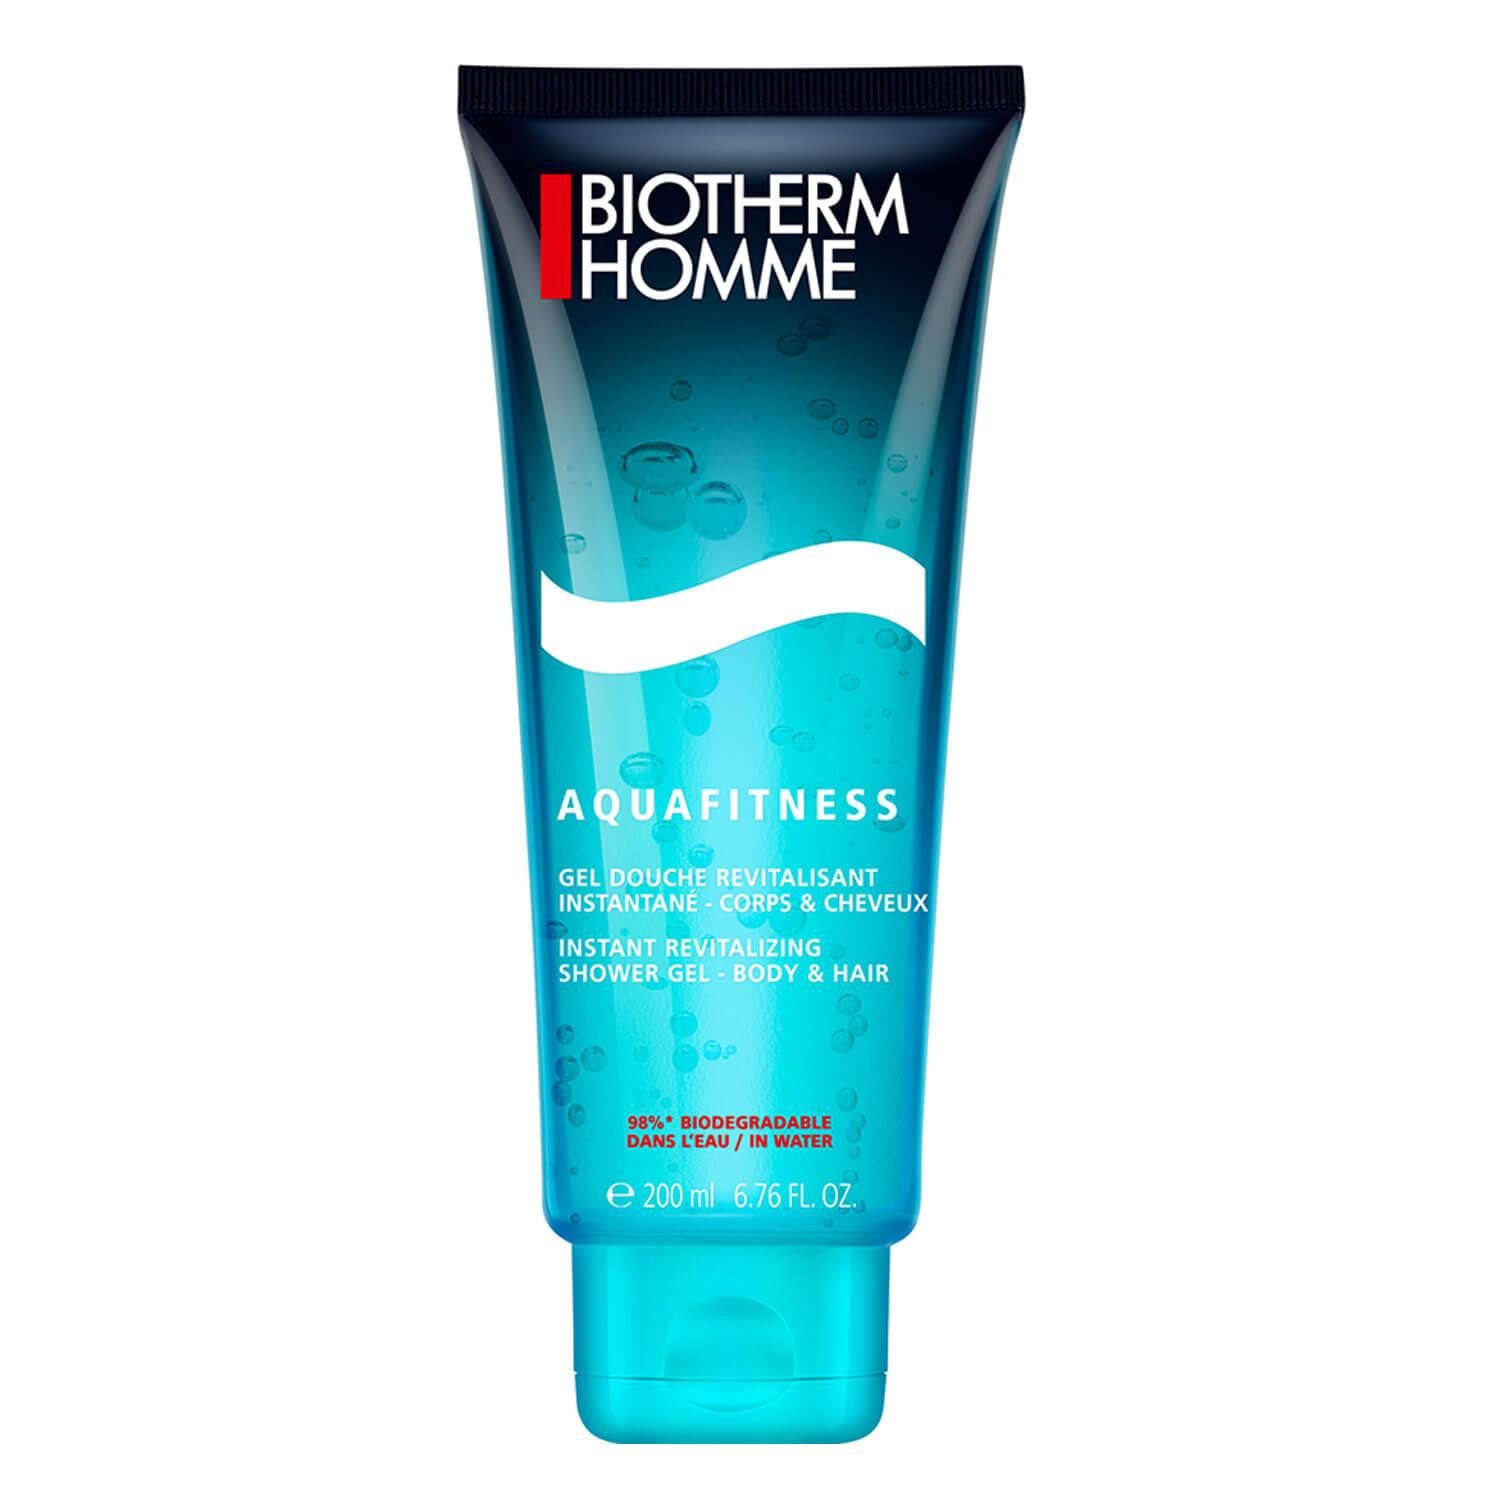 Biotherm Homme - Aquafitness Shower Gel